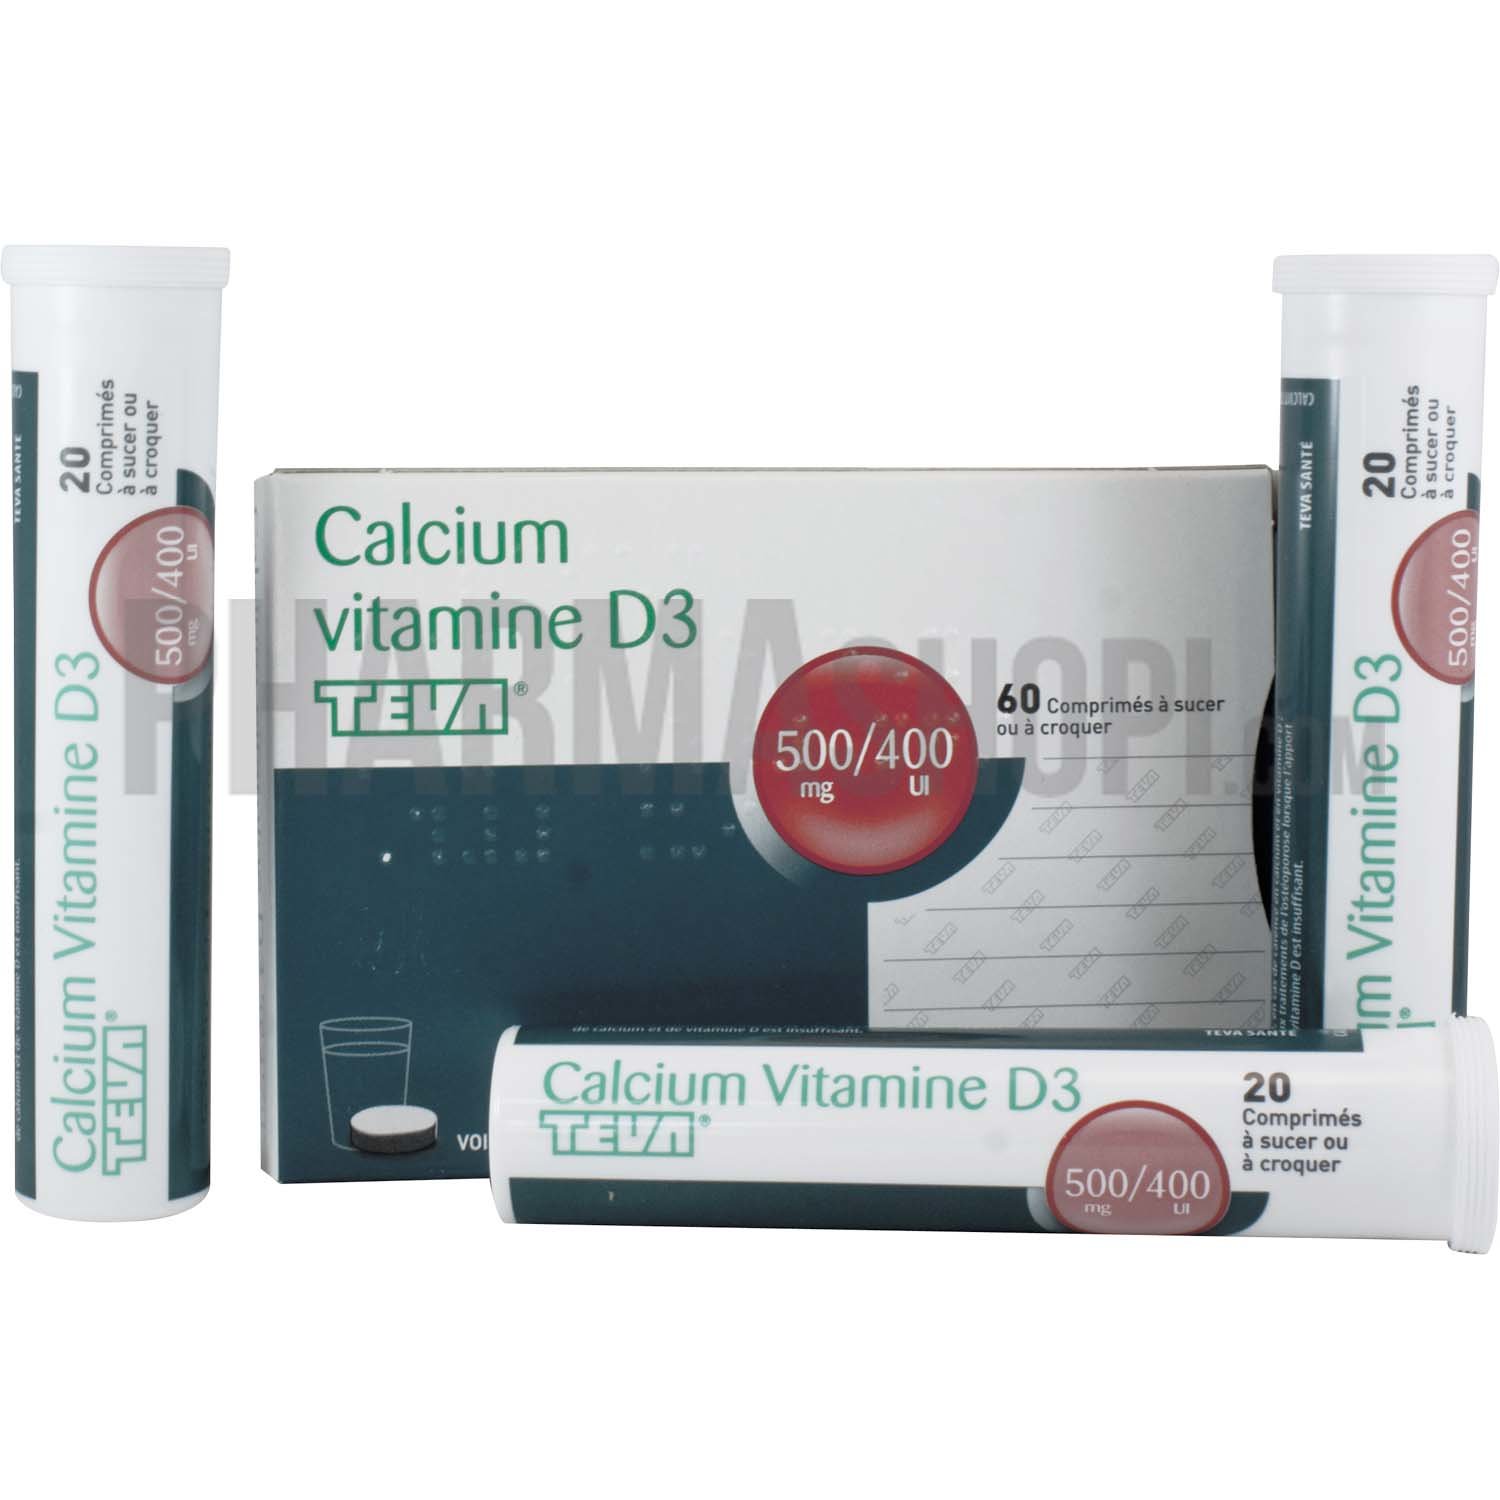 Calcium vitamines D3 TEVA 500mg comprimés à sucer ou à croquer - Boîte de 60 comprimés